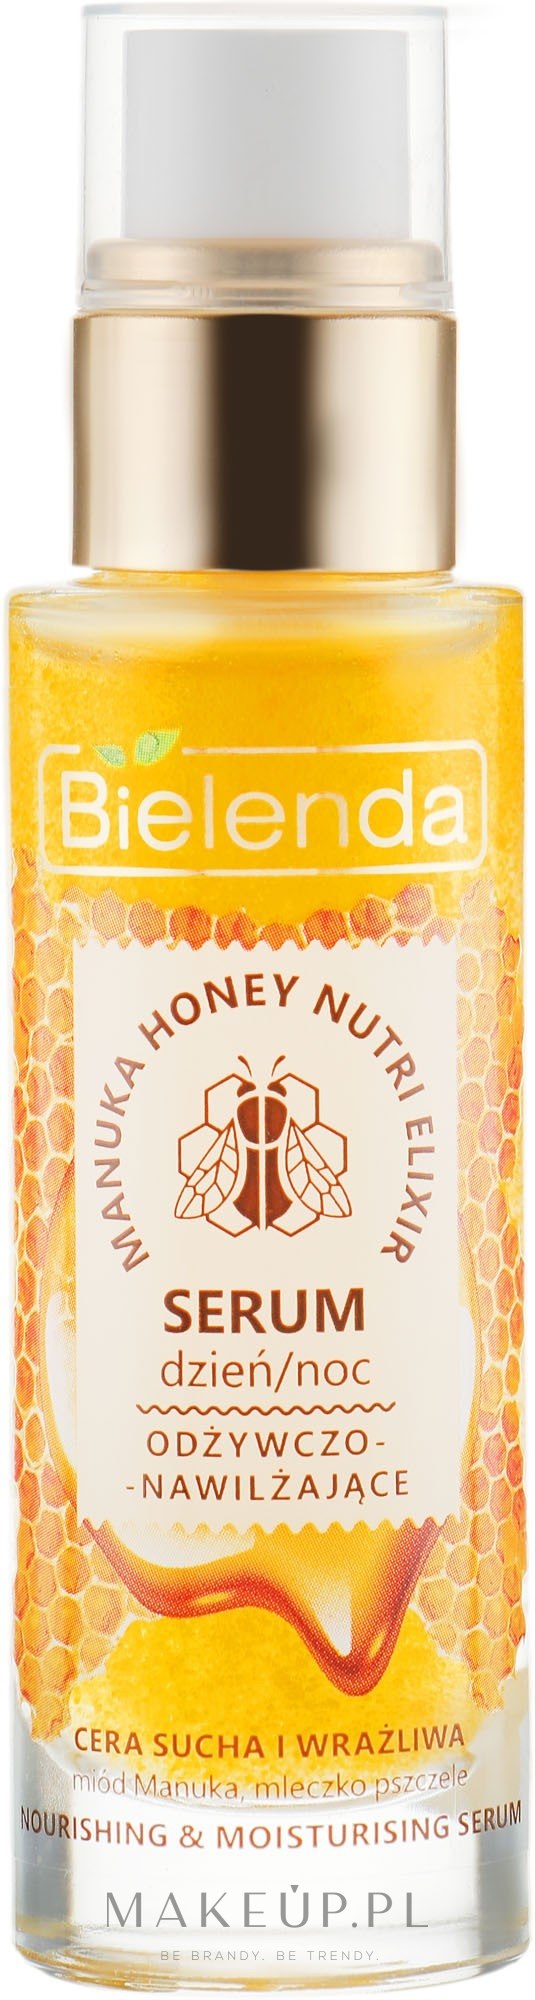 Odżywczo-nawilżające serum do twarzy Miód Manuka i mleczko pszczele - Bielenda Manuka Honey Nutri Elixir Serum — Zdjęcie 30 g